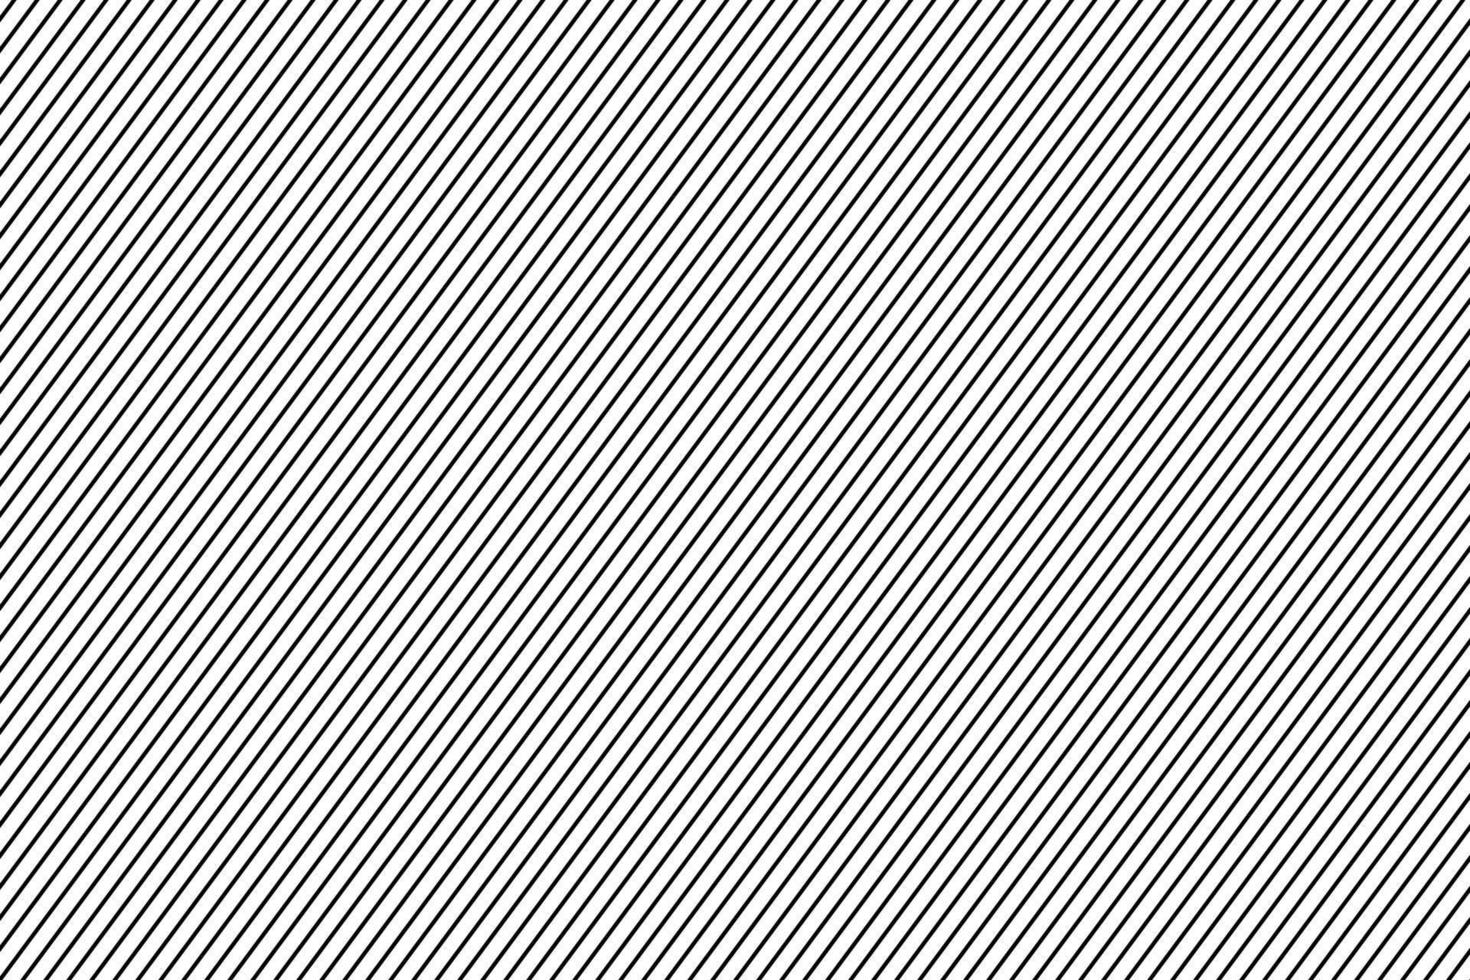 schwarz diagonal Streifen Gerade Linien Muster. vektor